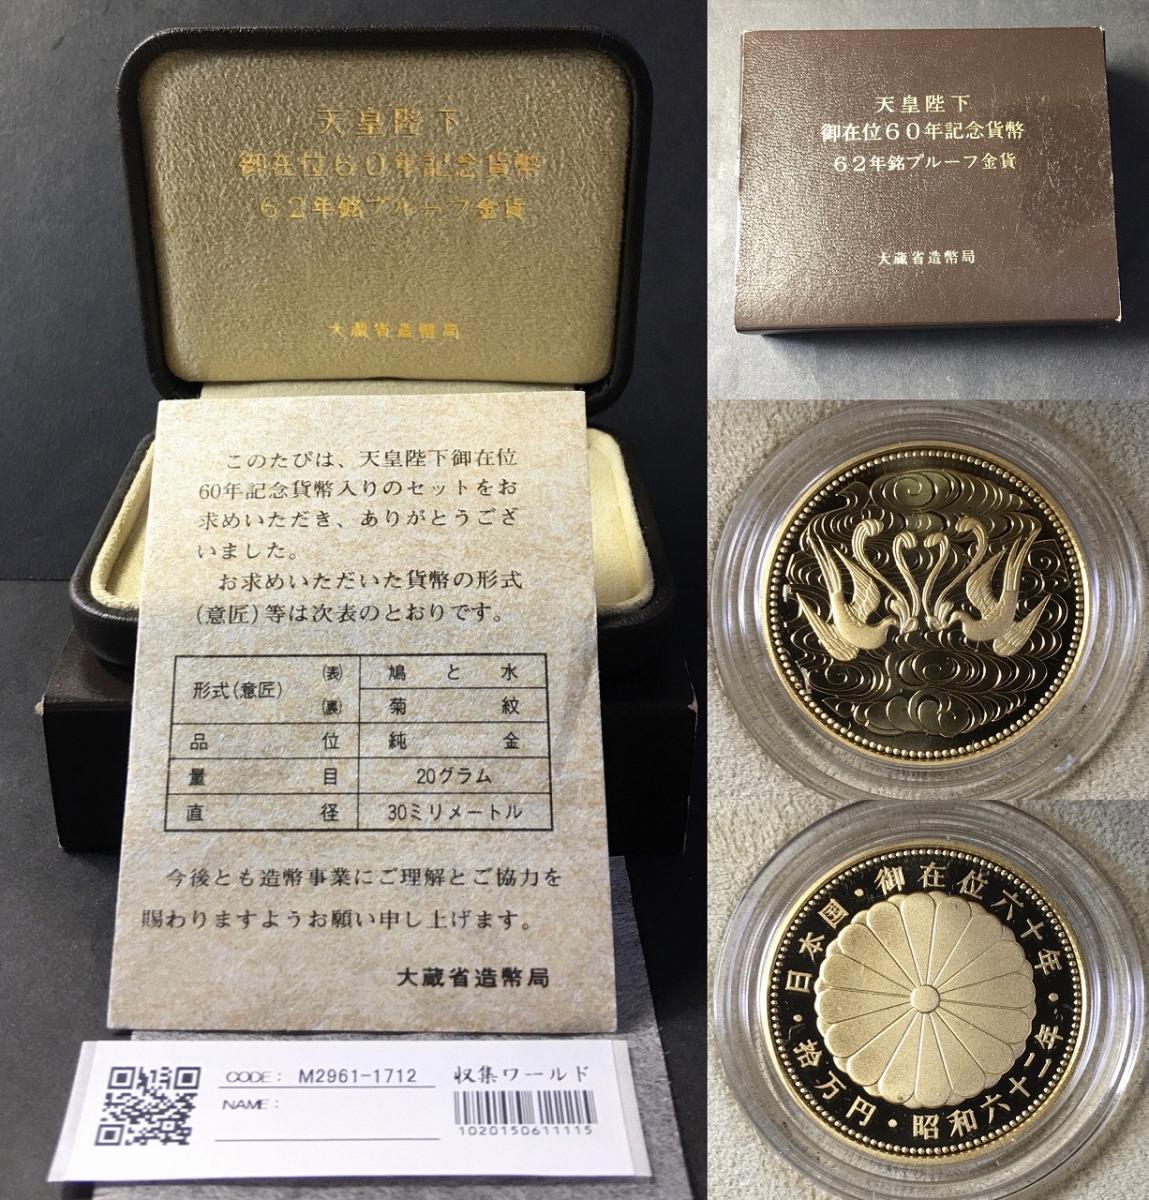 天皇陛下御在位60年記念 10万円金貨 プルーフ硬貨 ケース付き - 旧貨幣